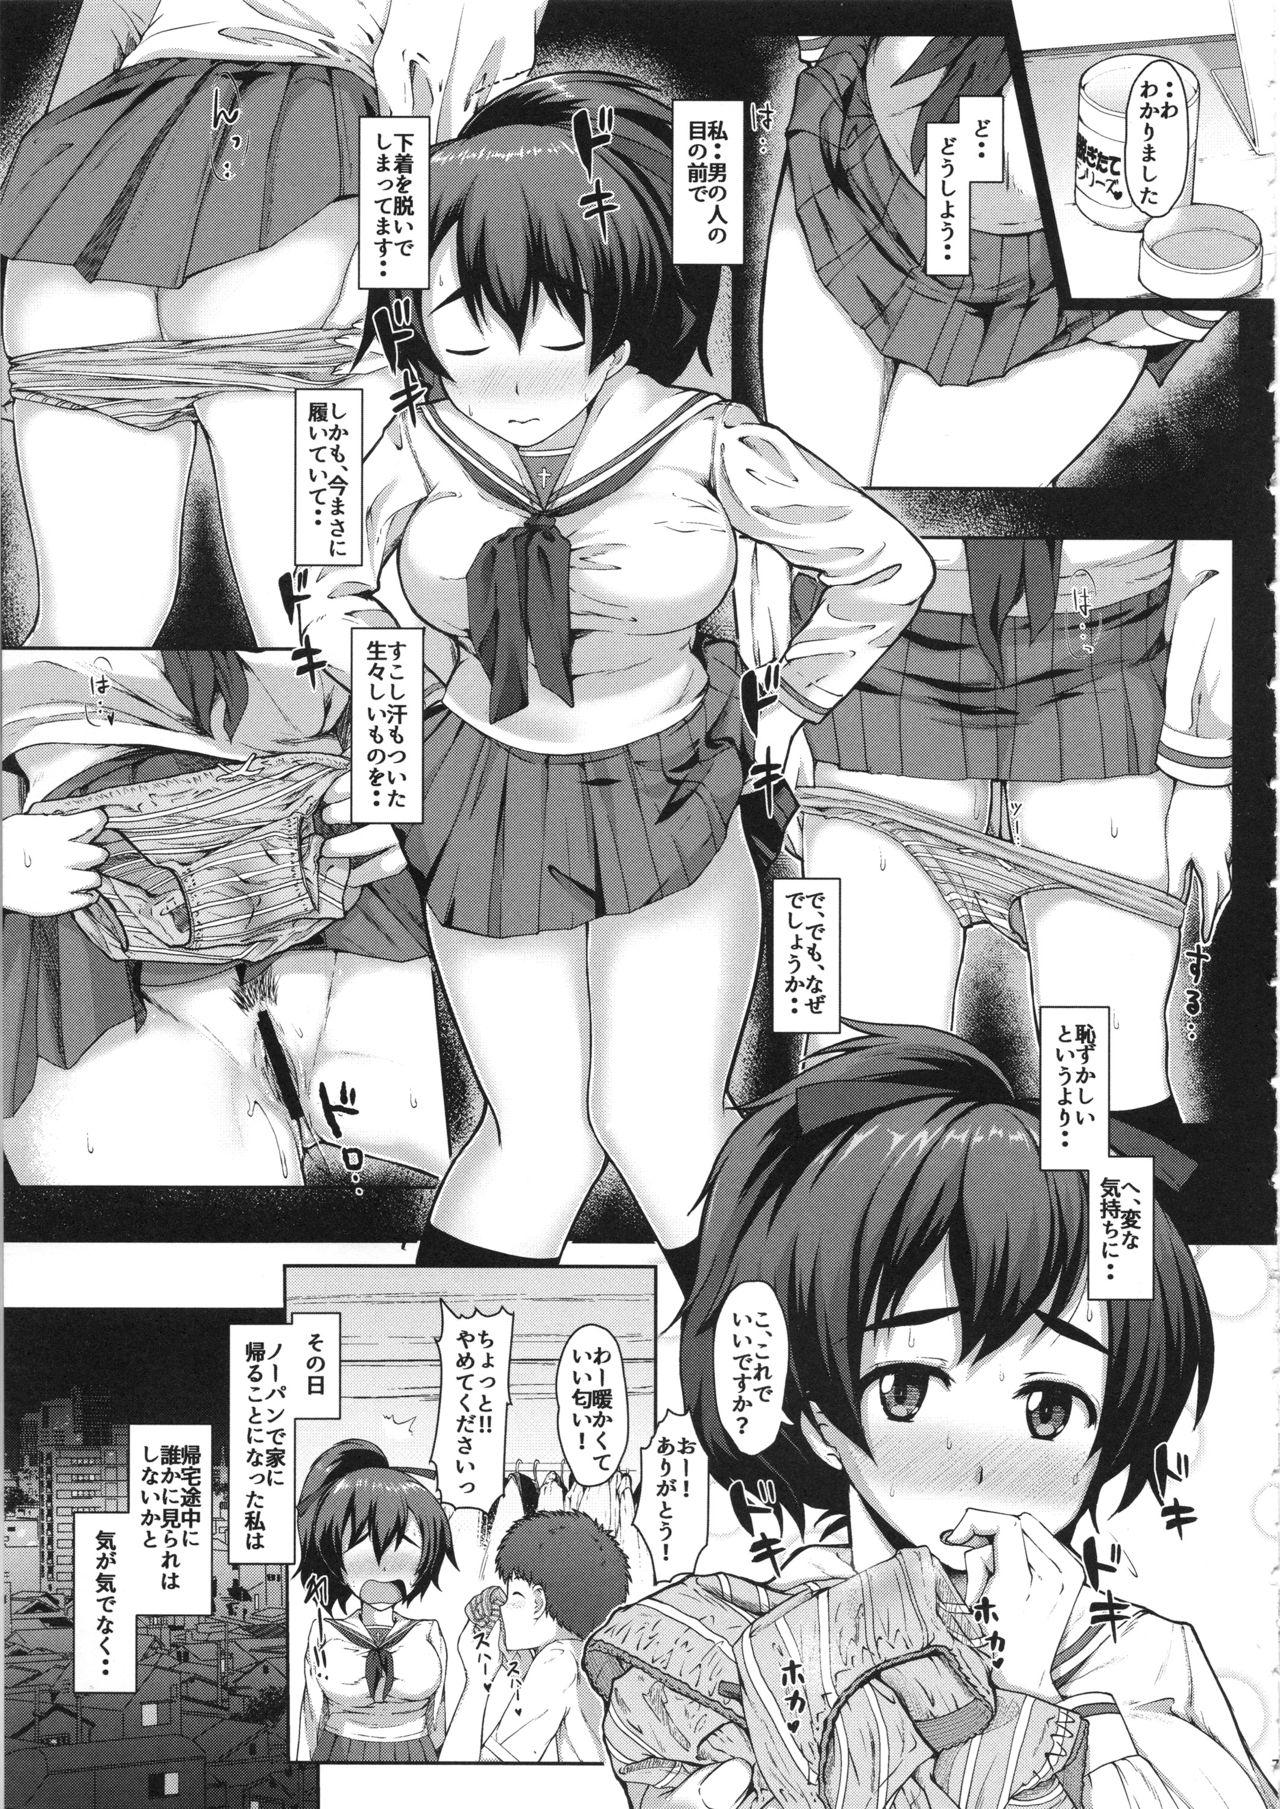 Fresh Yuzu-chan no Renkinjutsu - Girls und panzer Para - Page 6